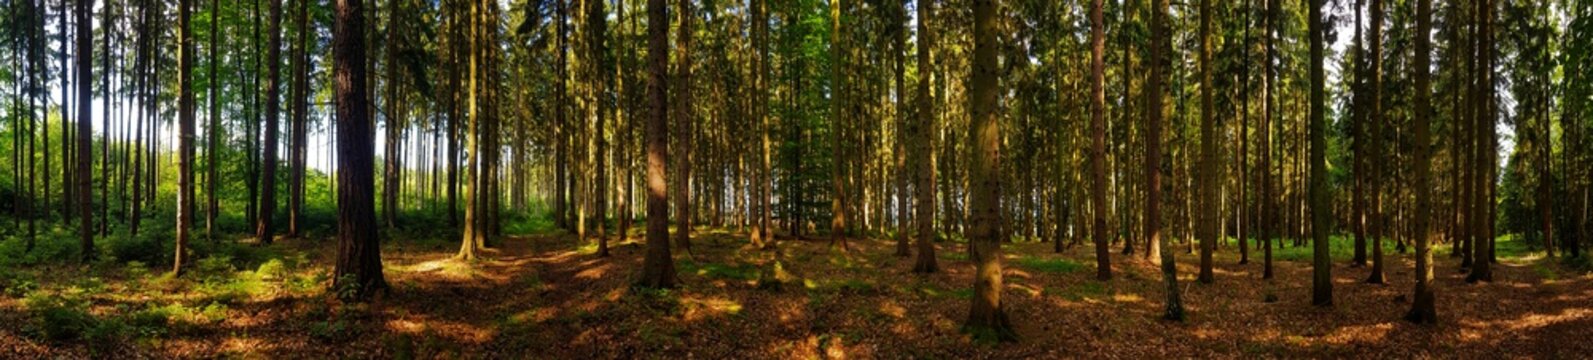 Fototapeta widok na leśną panoramę z drzewami